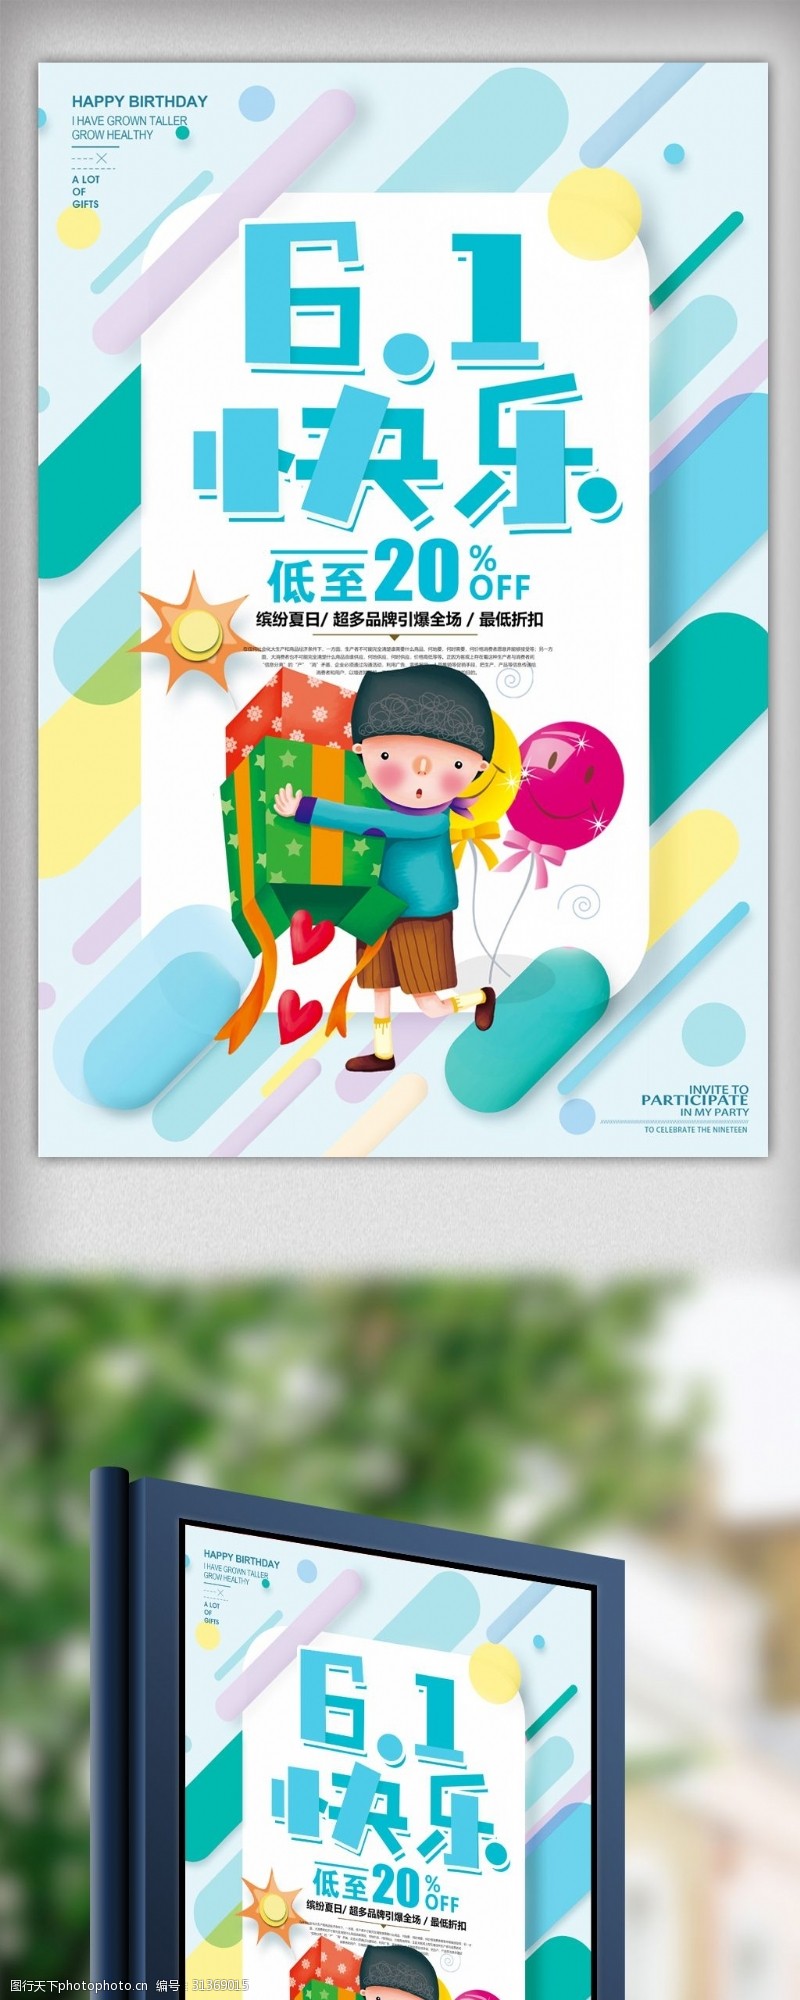 快乐61六一儿童节促销海报设计